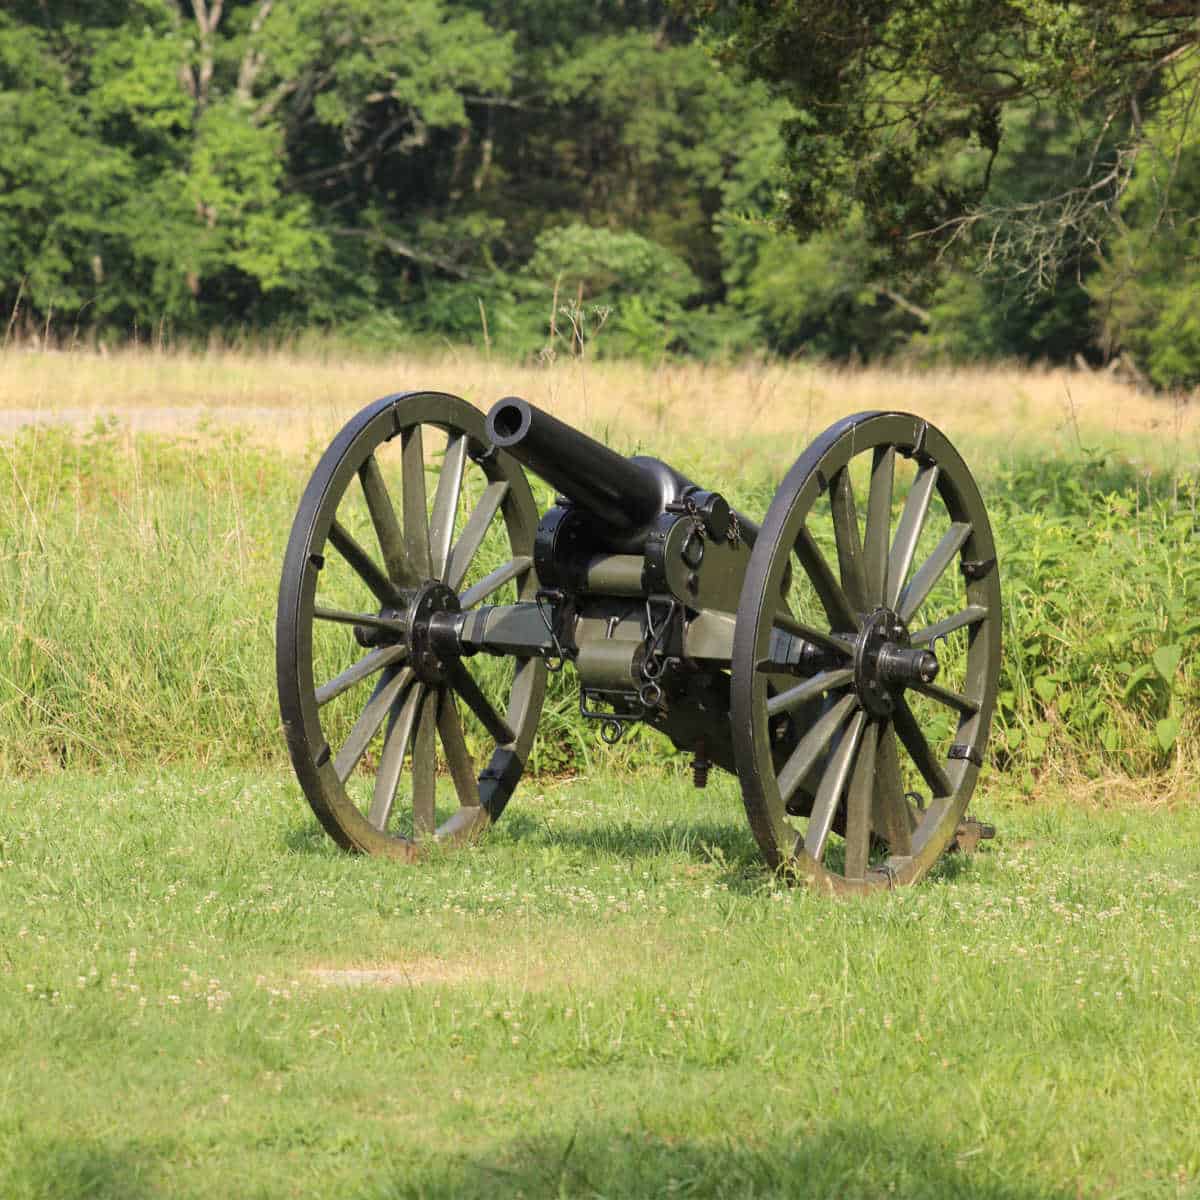 Historic Cannon in a grassy field